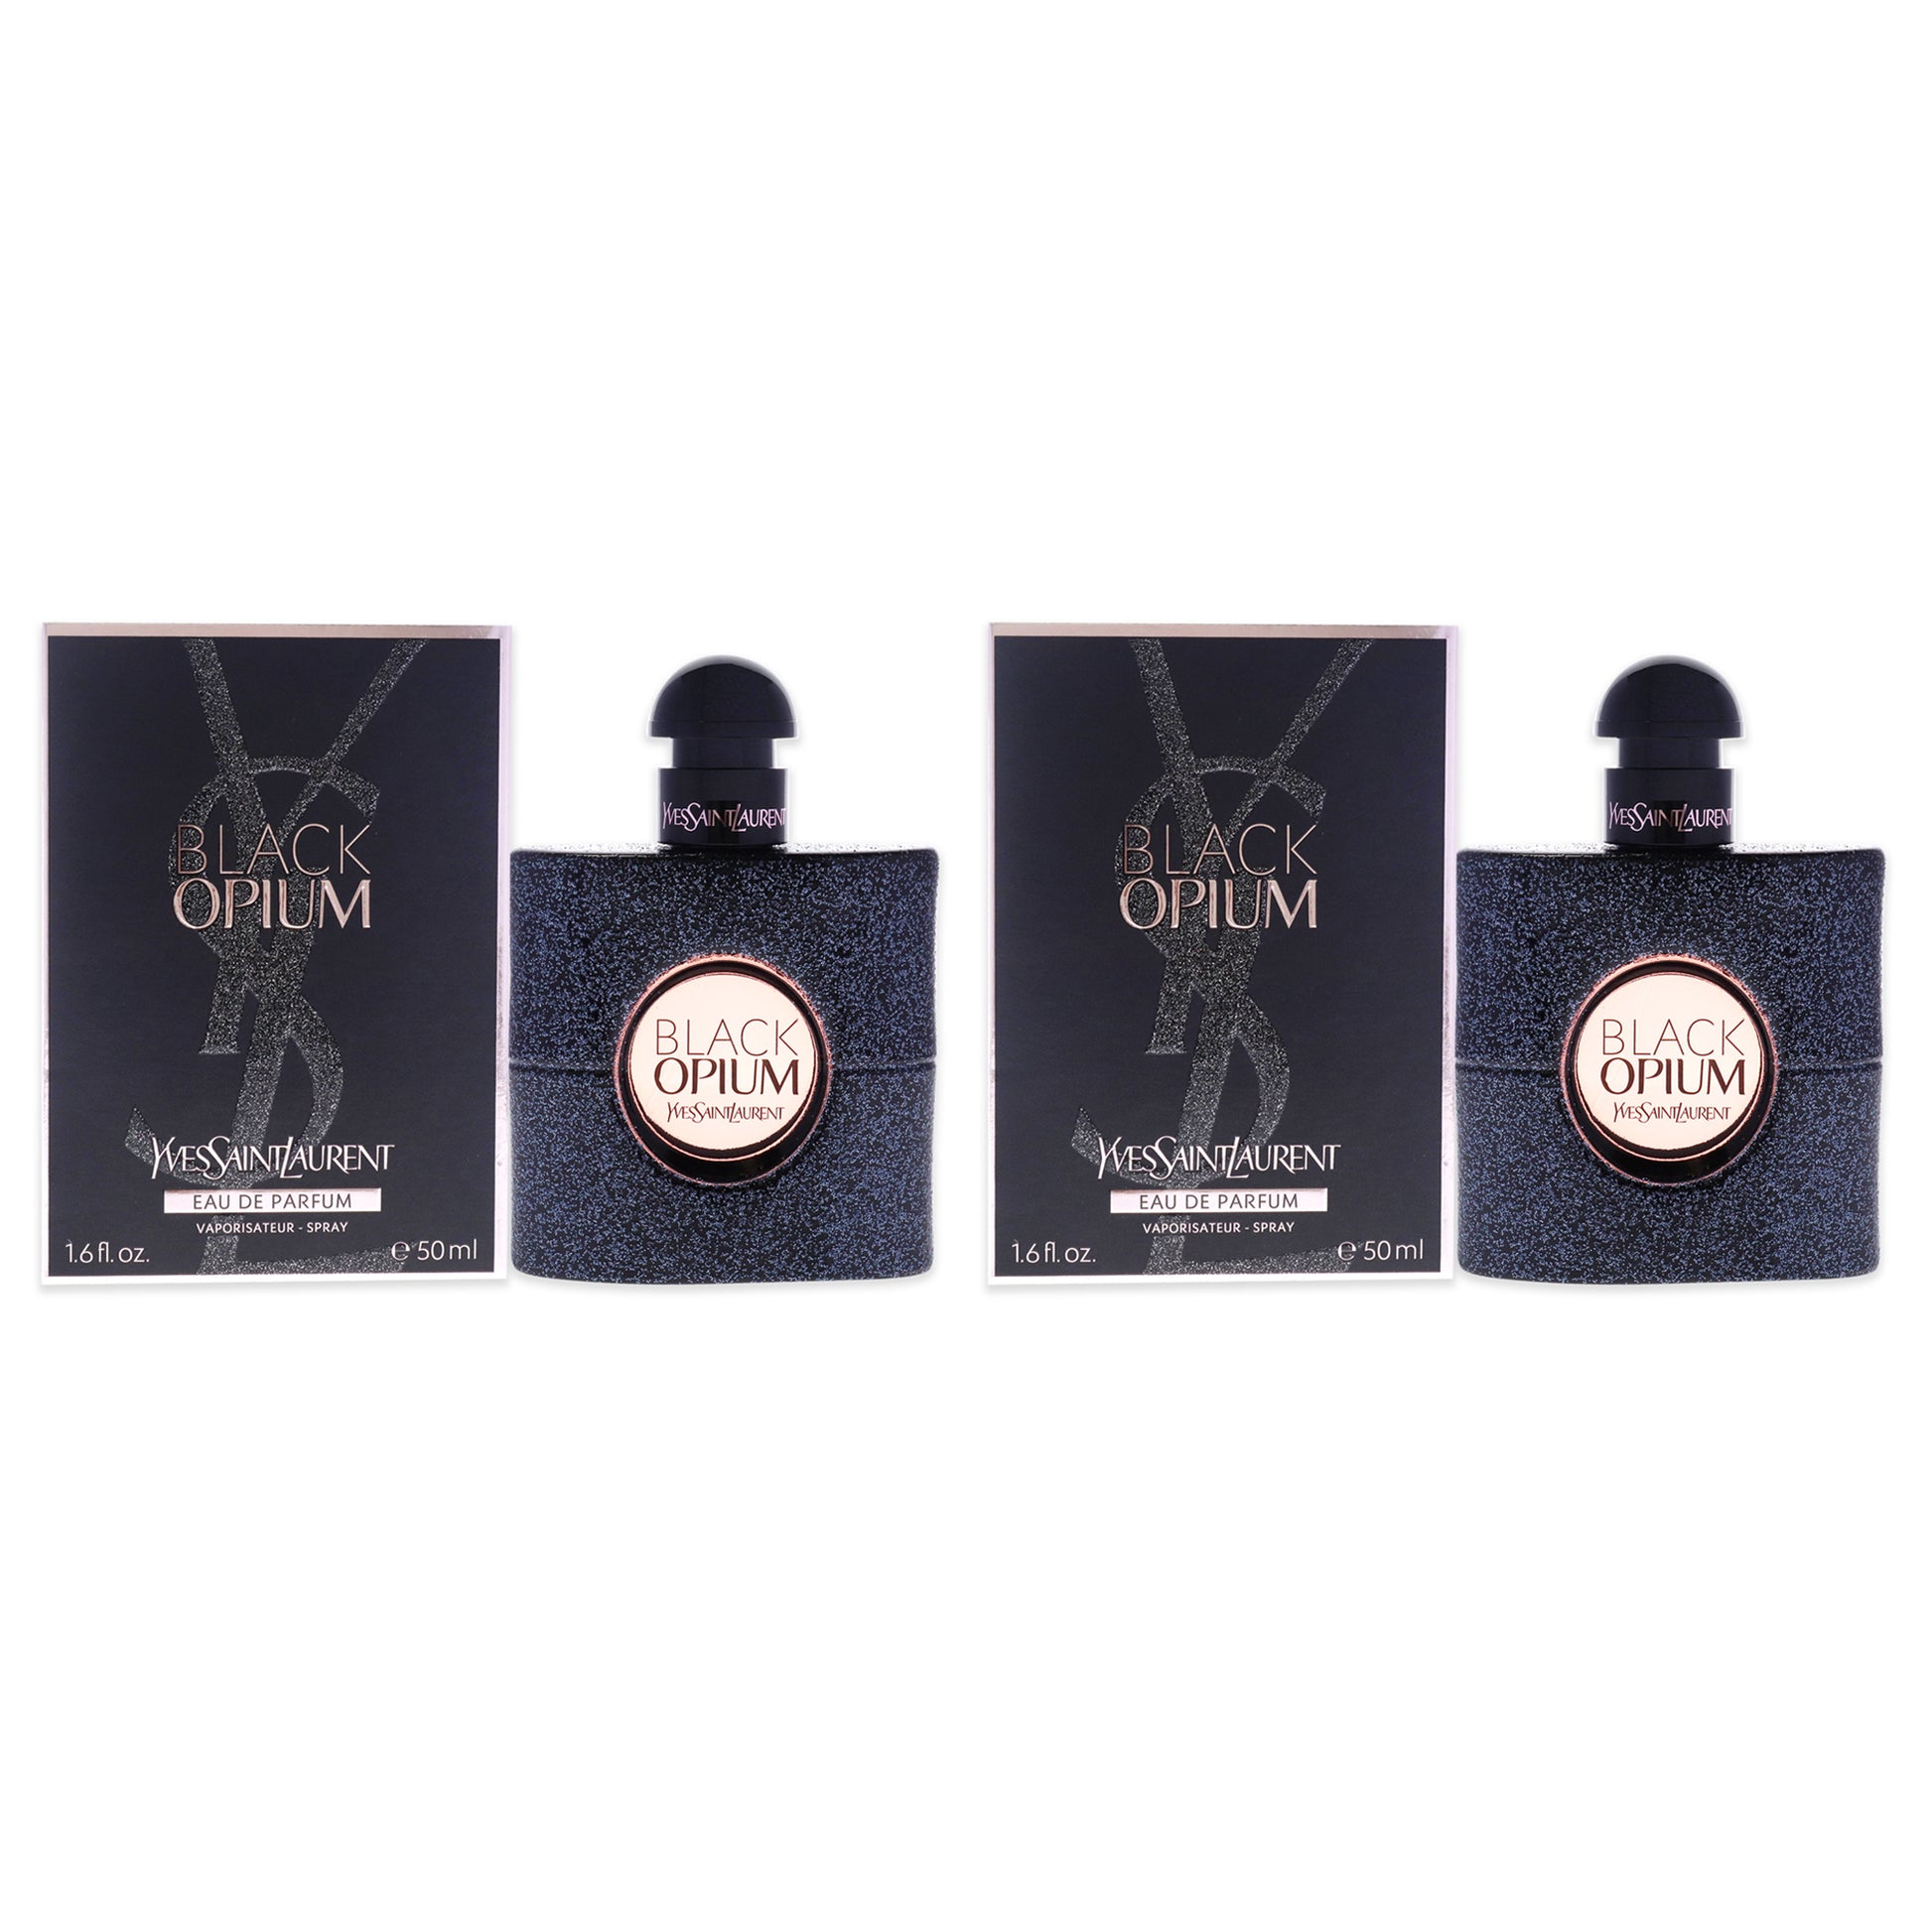 Yves Saint Laurent Black Opium Eau de Parfum - 1.6 fl oz